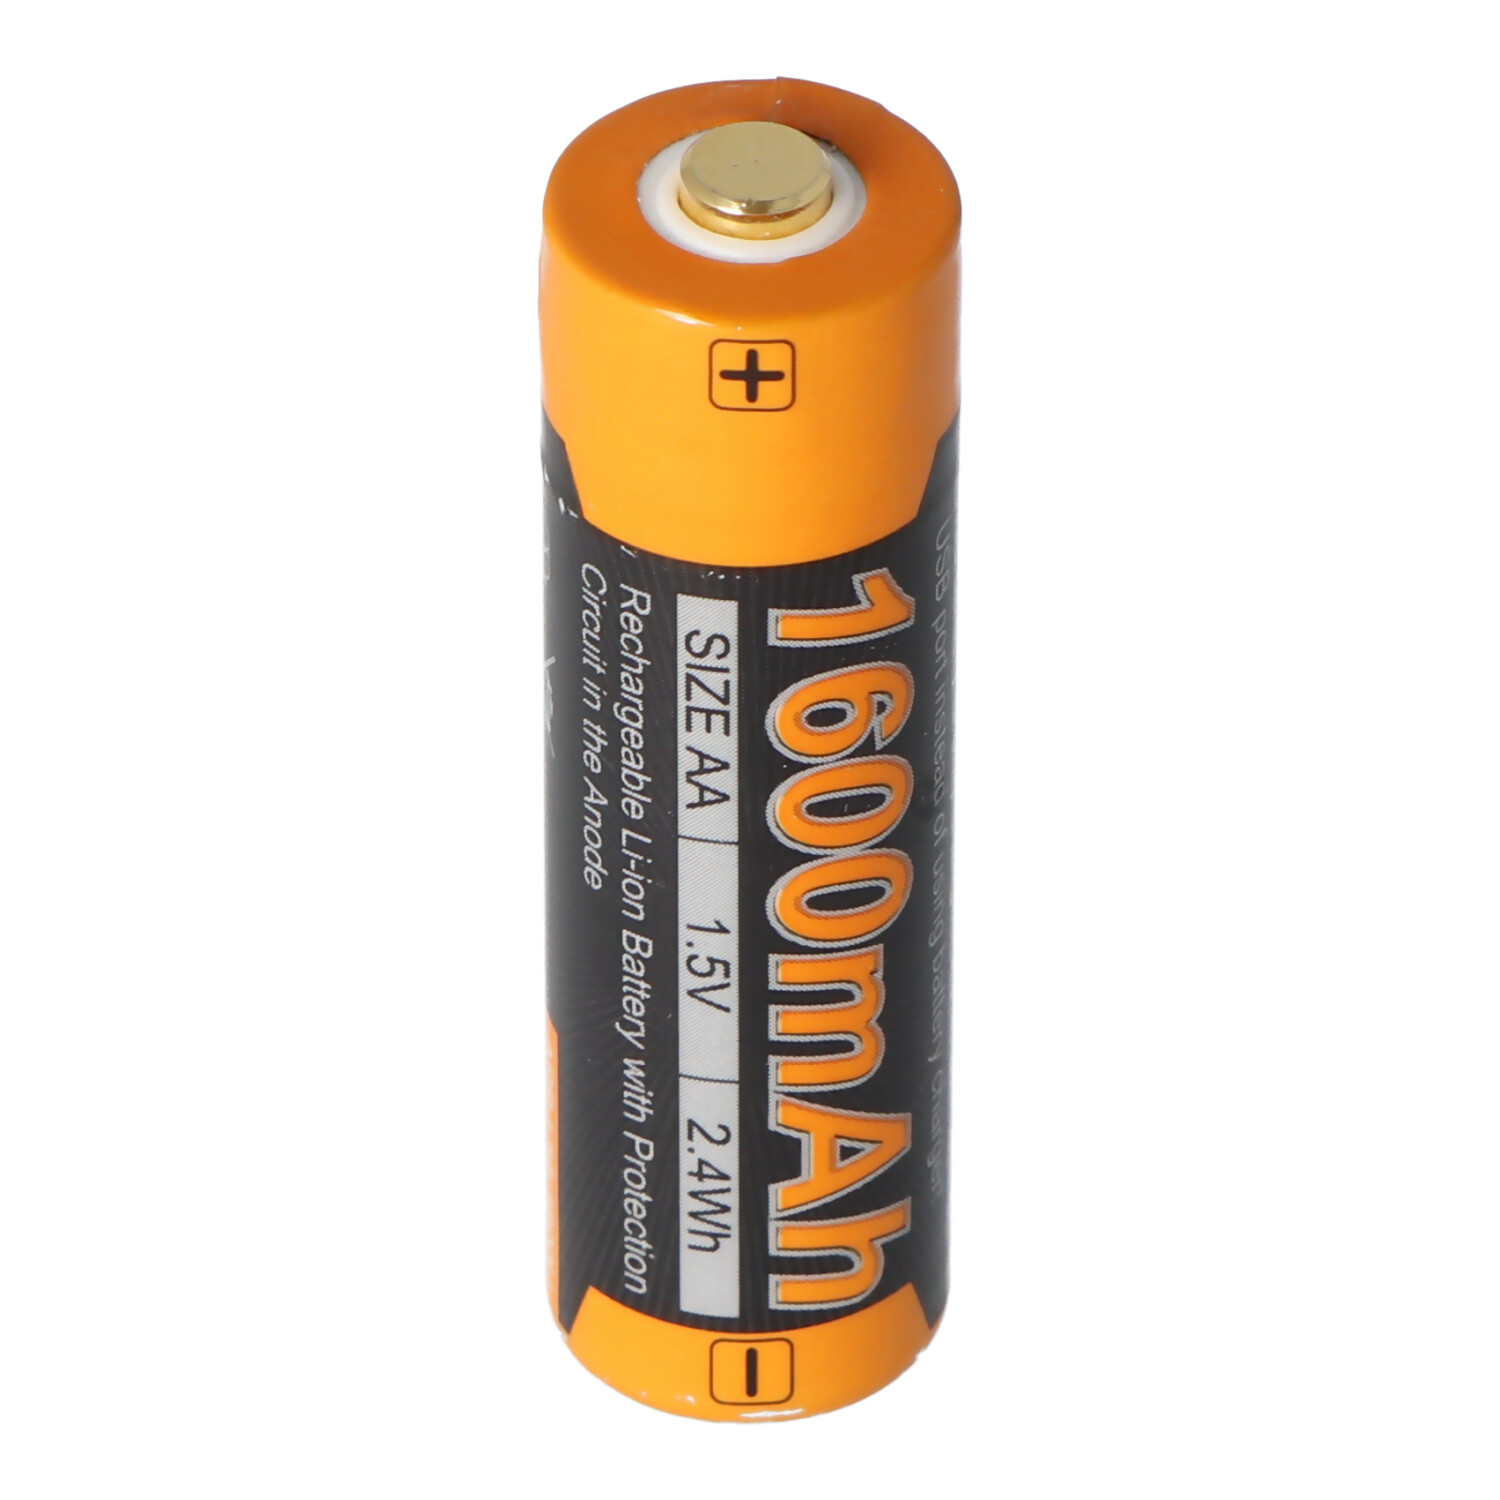 beest vredig ethisch Li-ion oplaadbare batterij Mignon AA LR6 1600 mAh met 1,5 volt  multi-beschermd met USB-oplaadfunctie, AccuSafe 1 stuk | Ready2use- batterijen | Batterij op maat | Accumulator | Akku-Shop Nederland